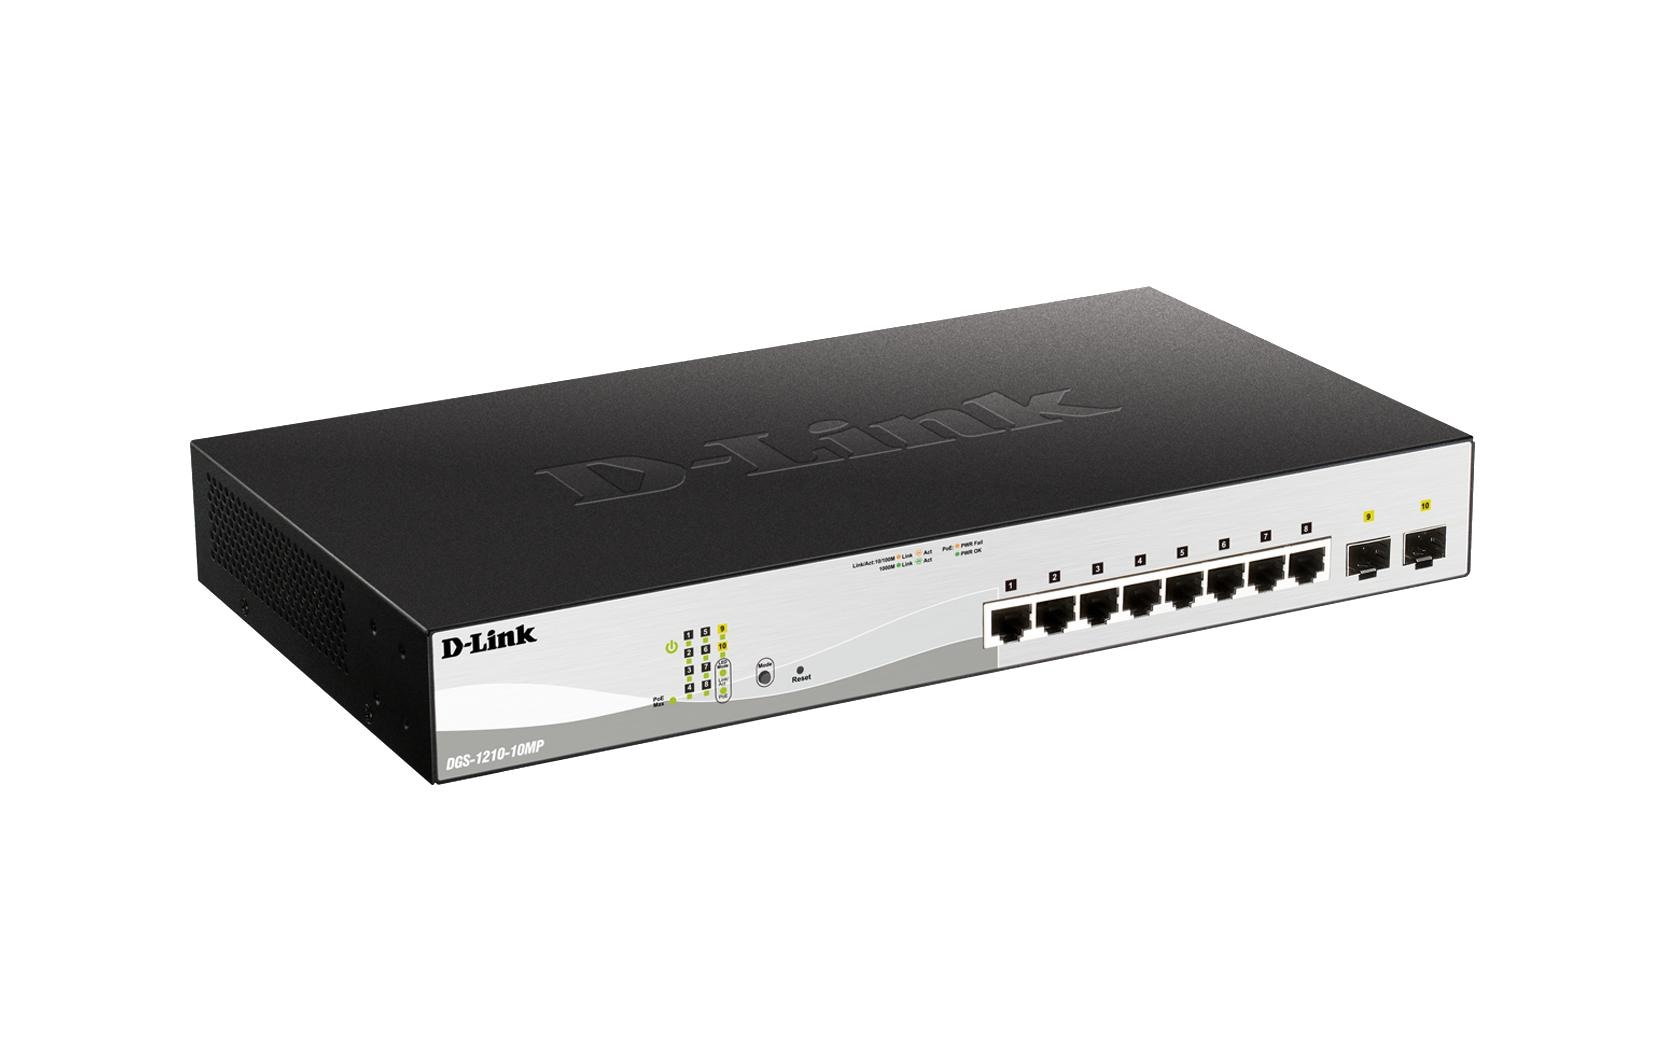 D-Link PoE+ Switch DGS-1210-10MP 10 Port